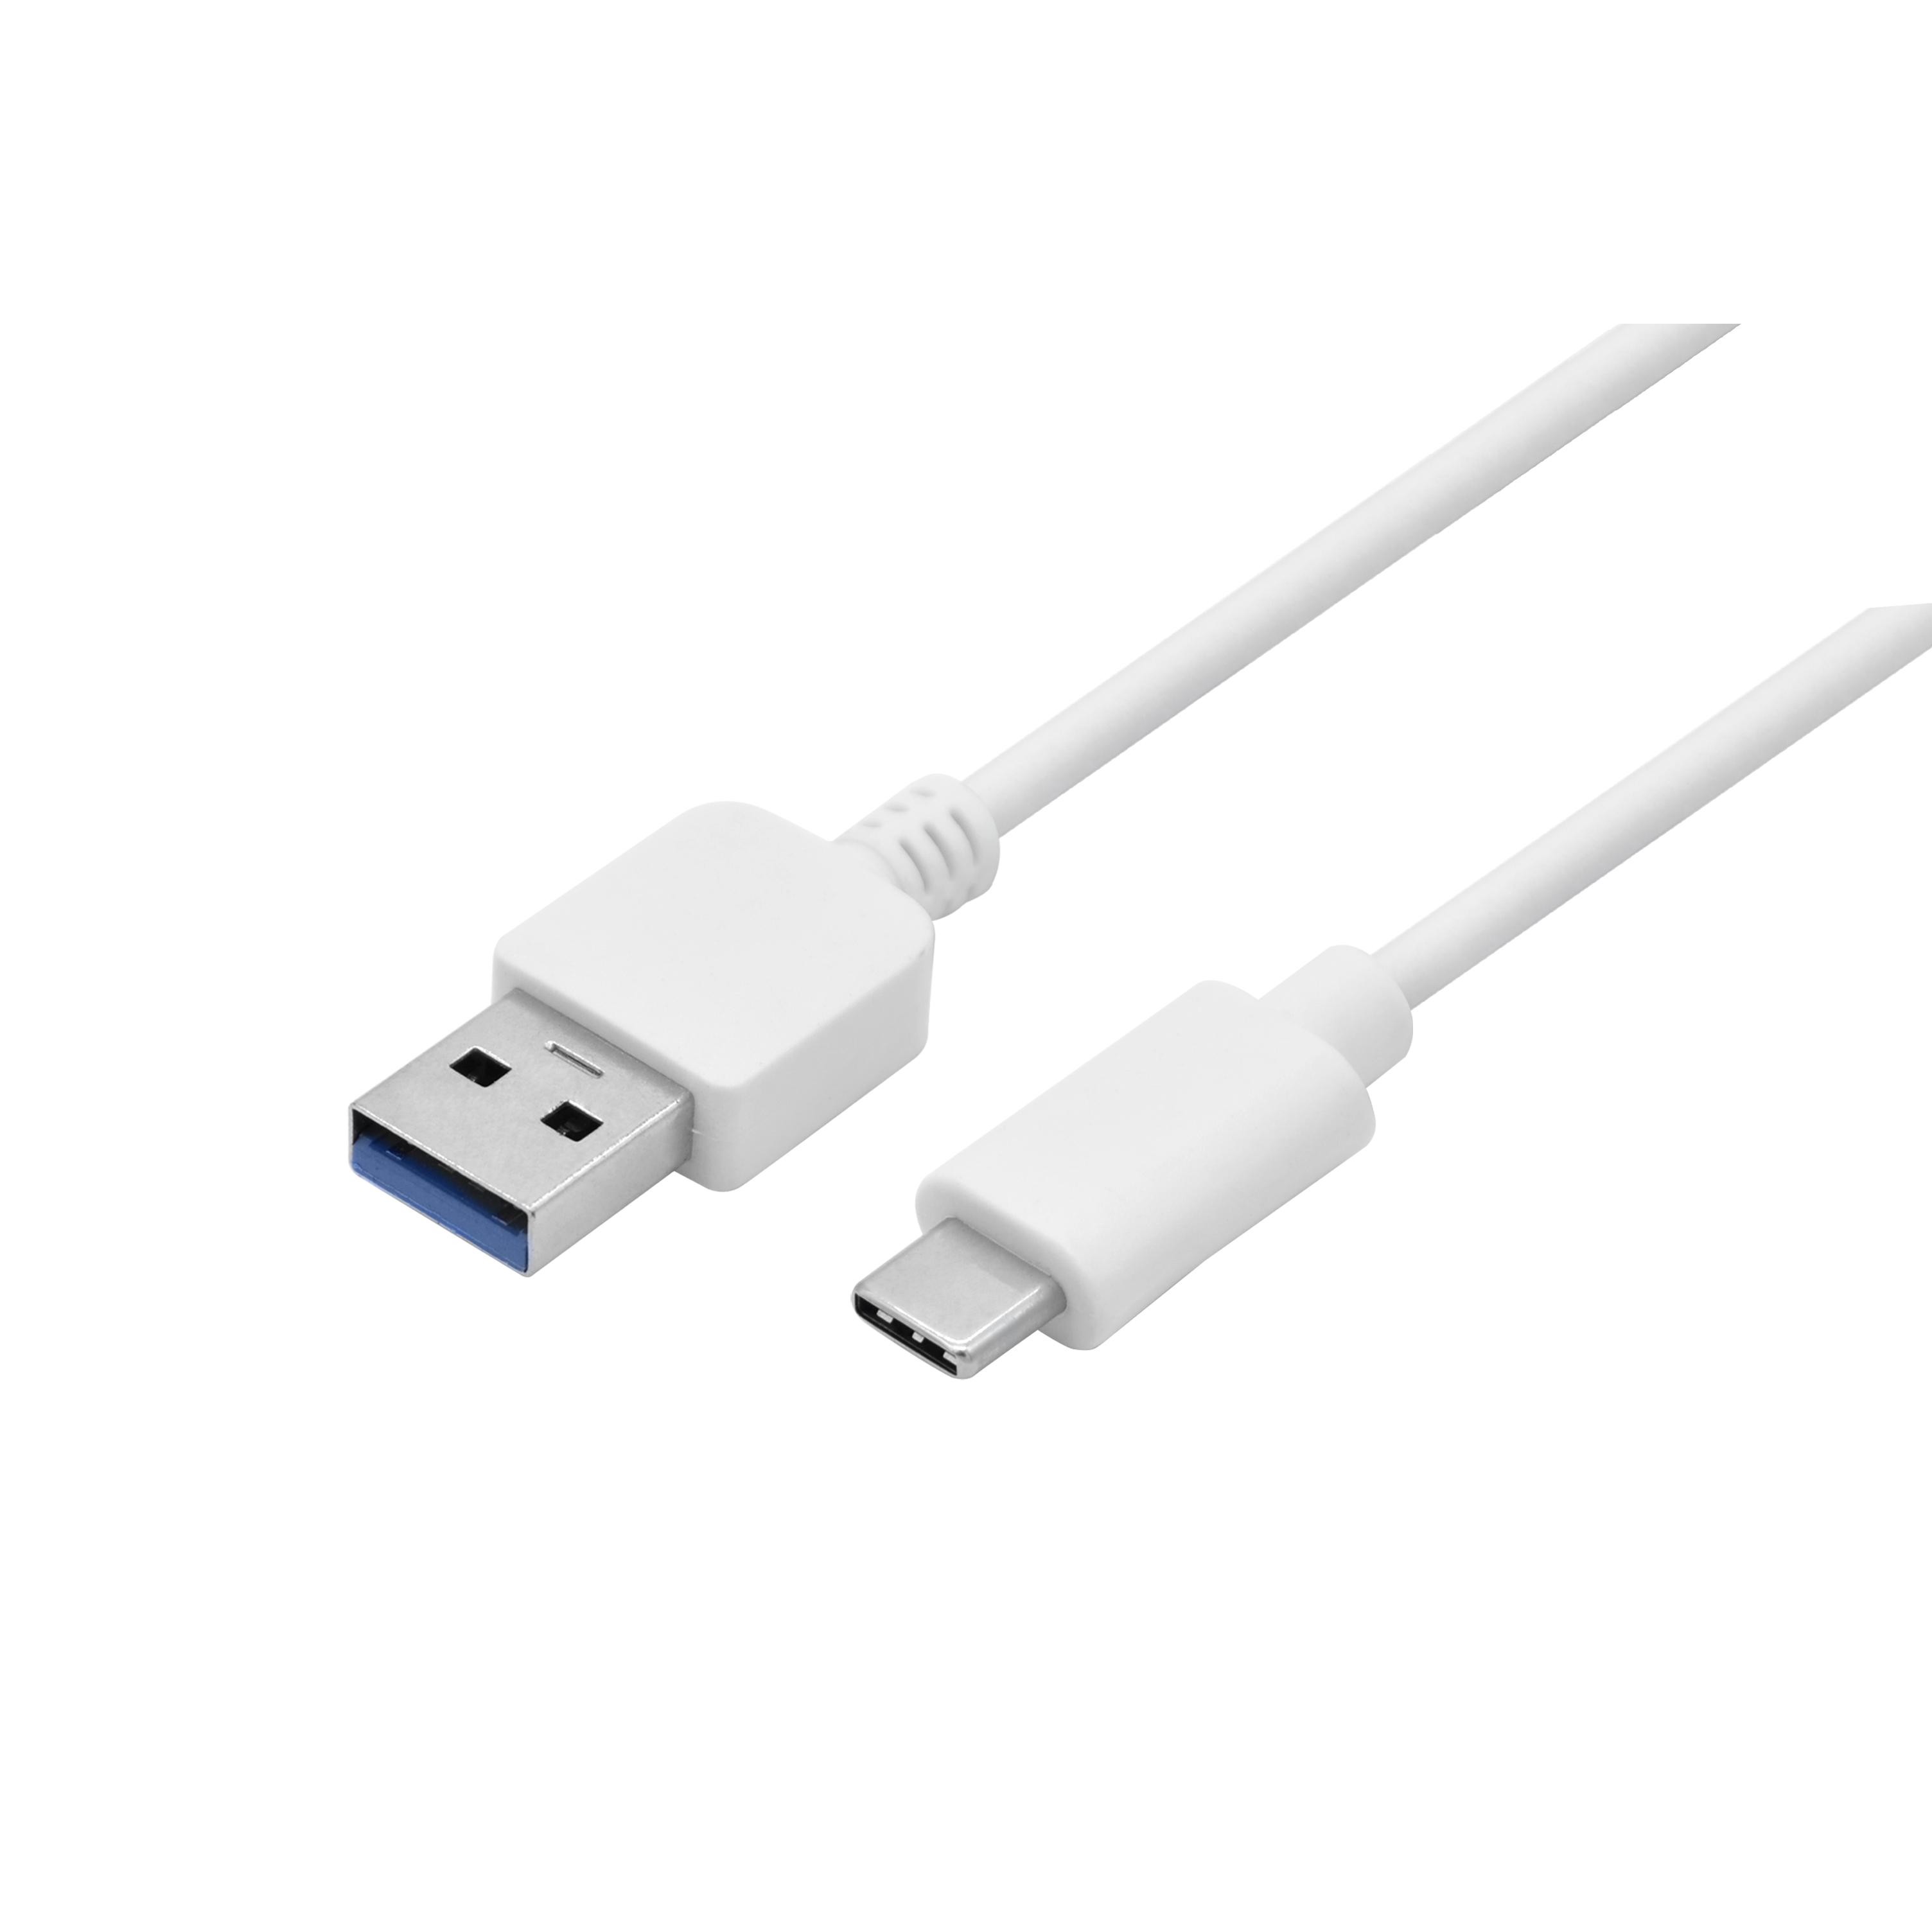 Coolbox - Cable USB-A a USB-C, Soporta transferencia de datos y carga, Soporta QC2.0, QC3.0, QC4.0, Compatible con smartphones, tablets...